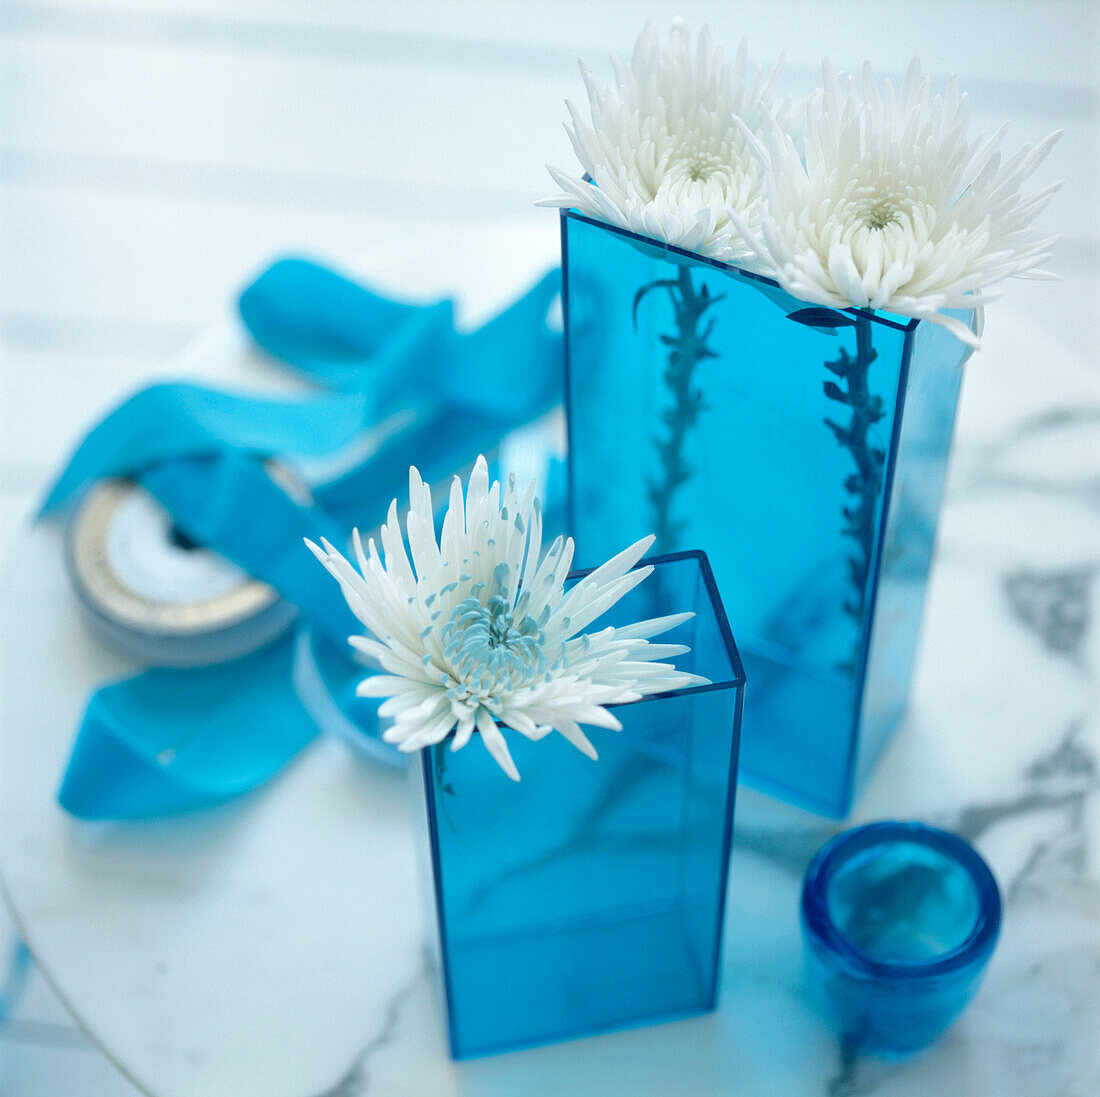 Detail von türkisblauen Glasvasen mit weißen Chrysanthemenblüten